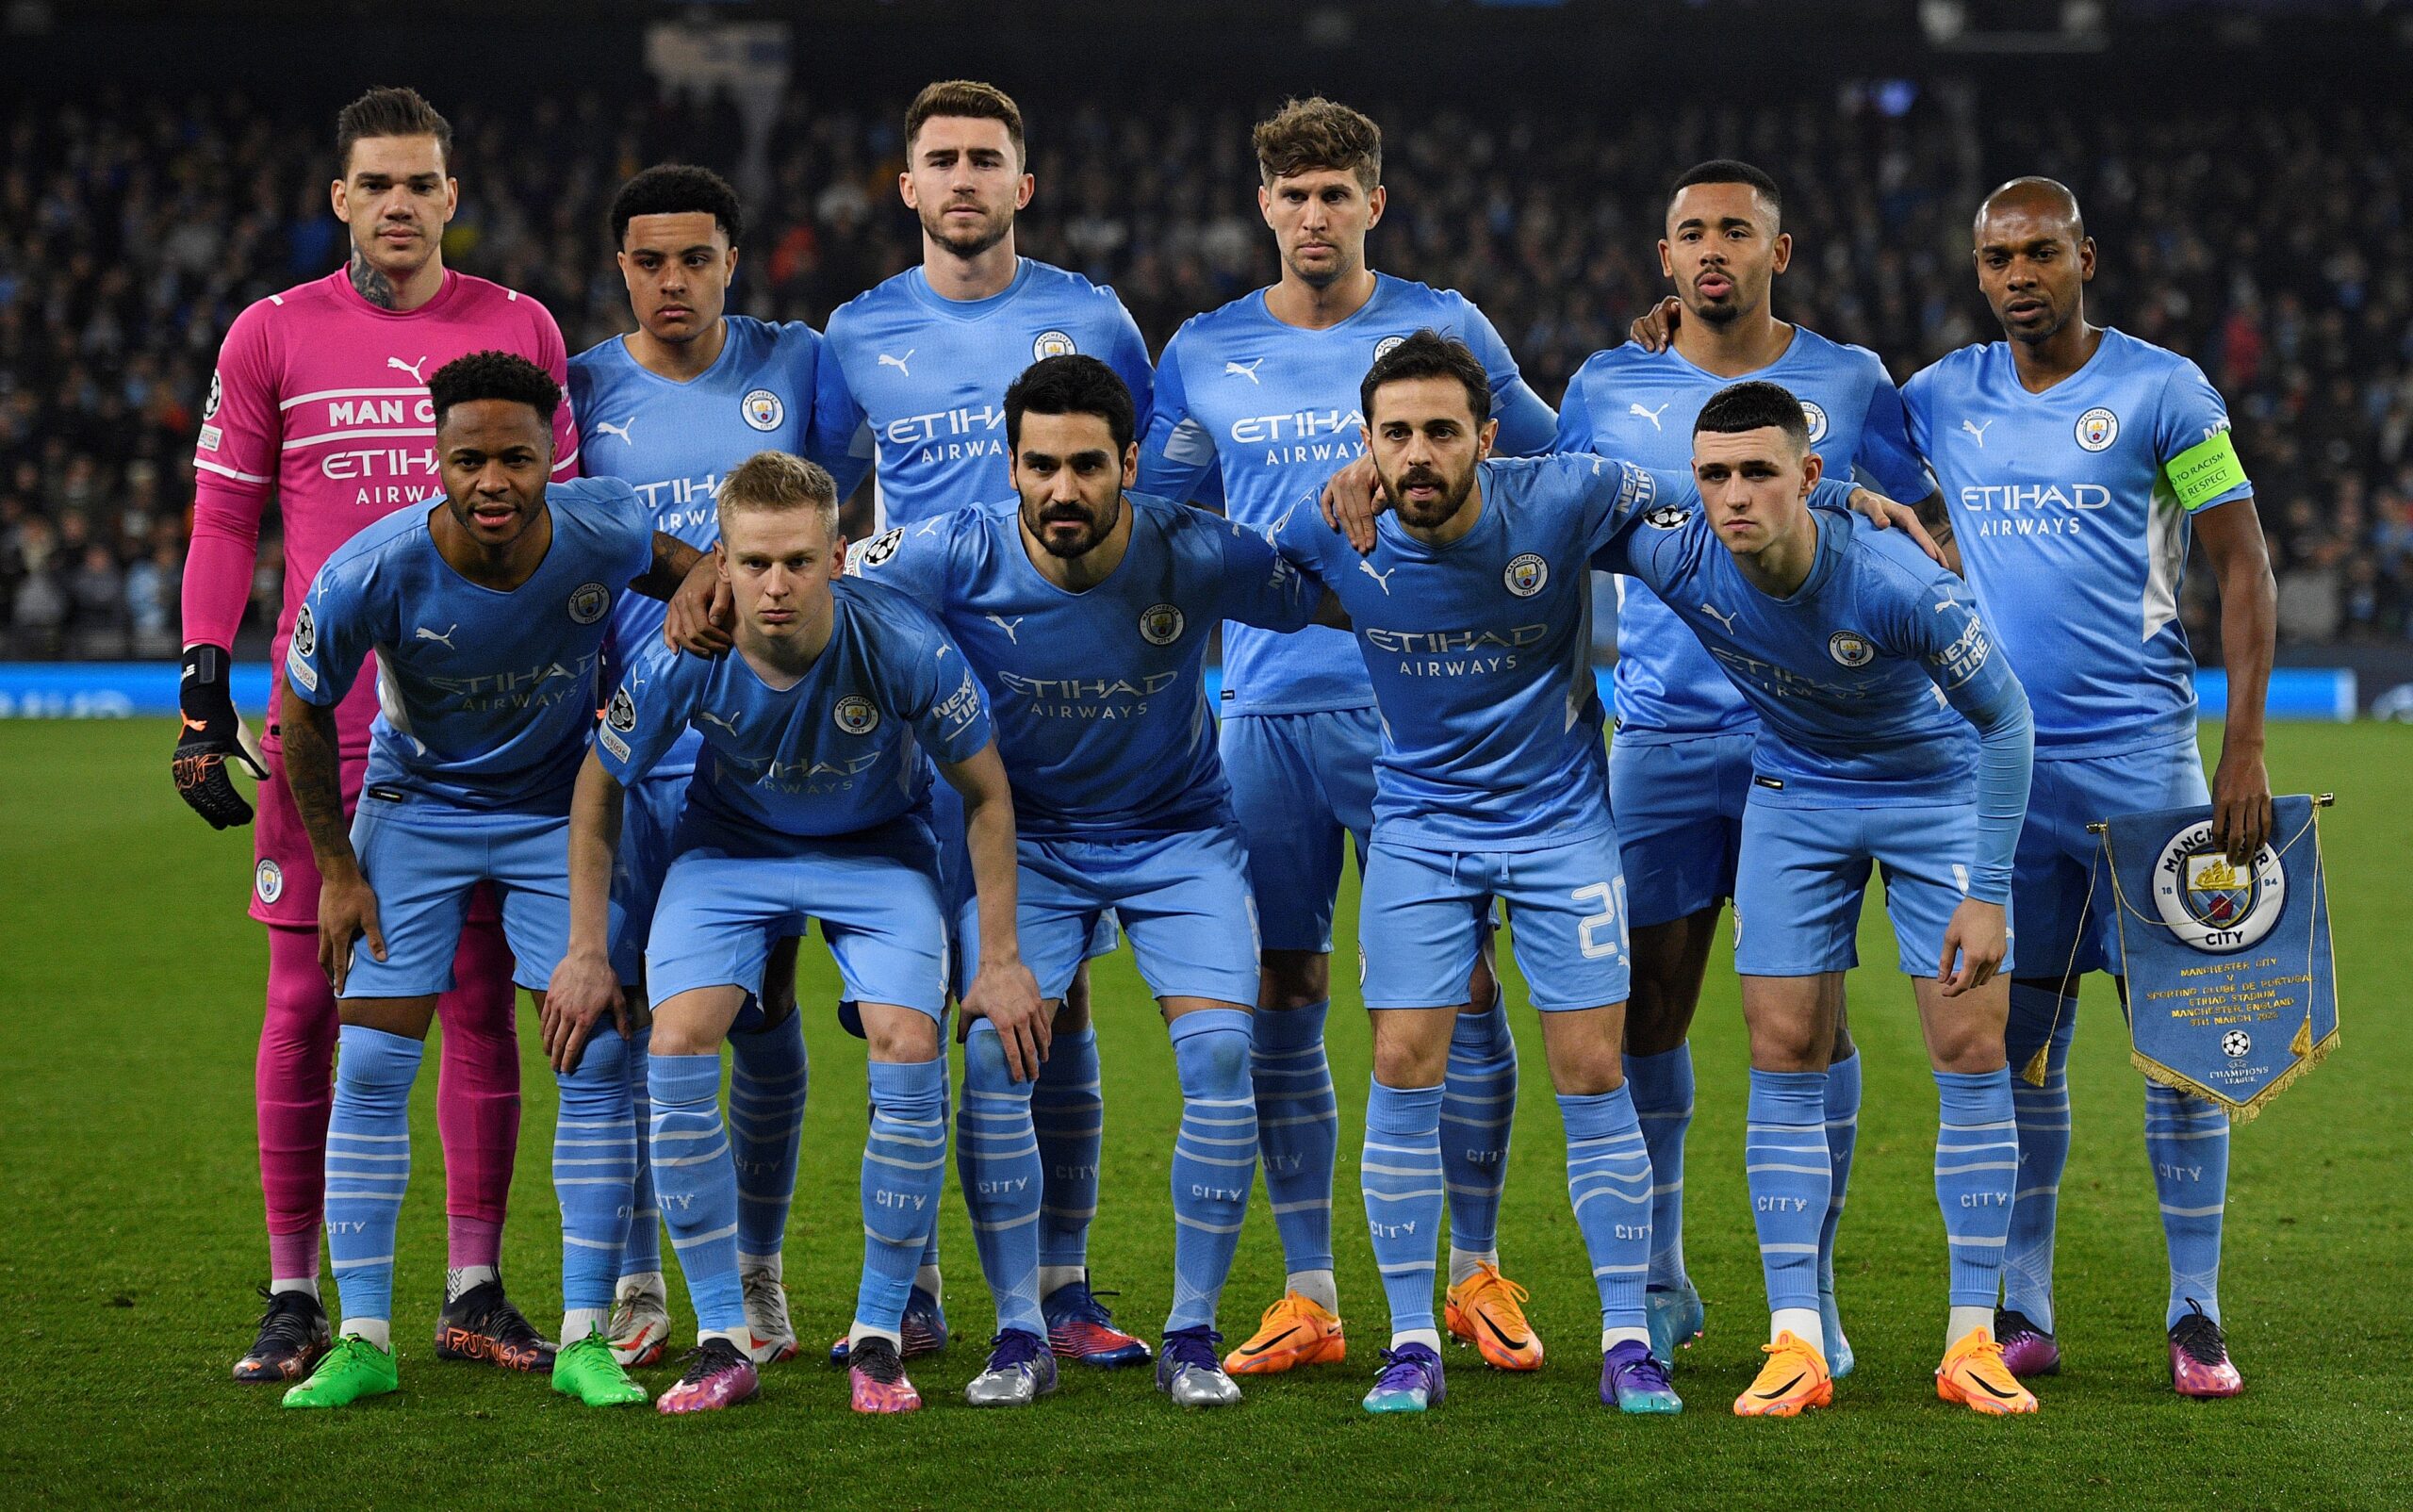 Calciomercato Milan como a estrela do Manchester City: os detalhes